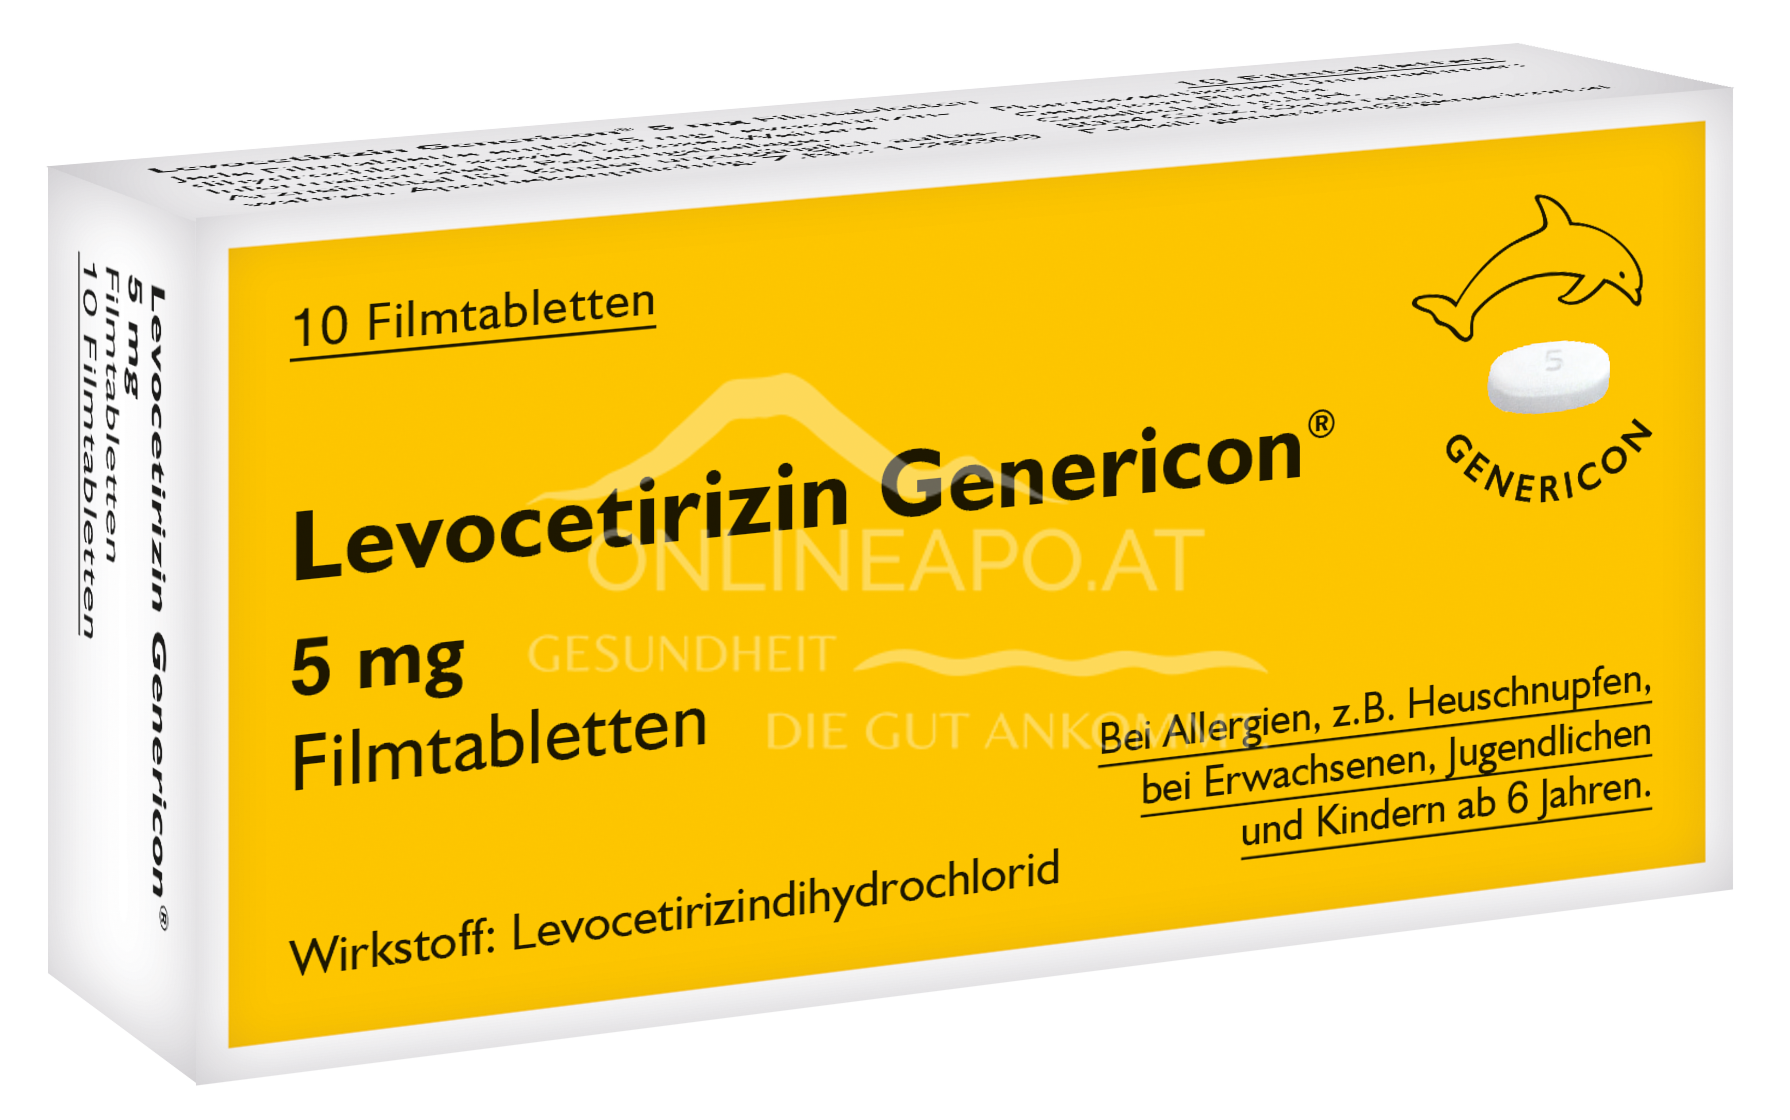 Levocetirizin Genericon 5 mg Filmtabletten